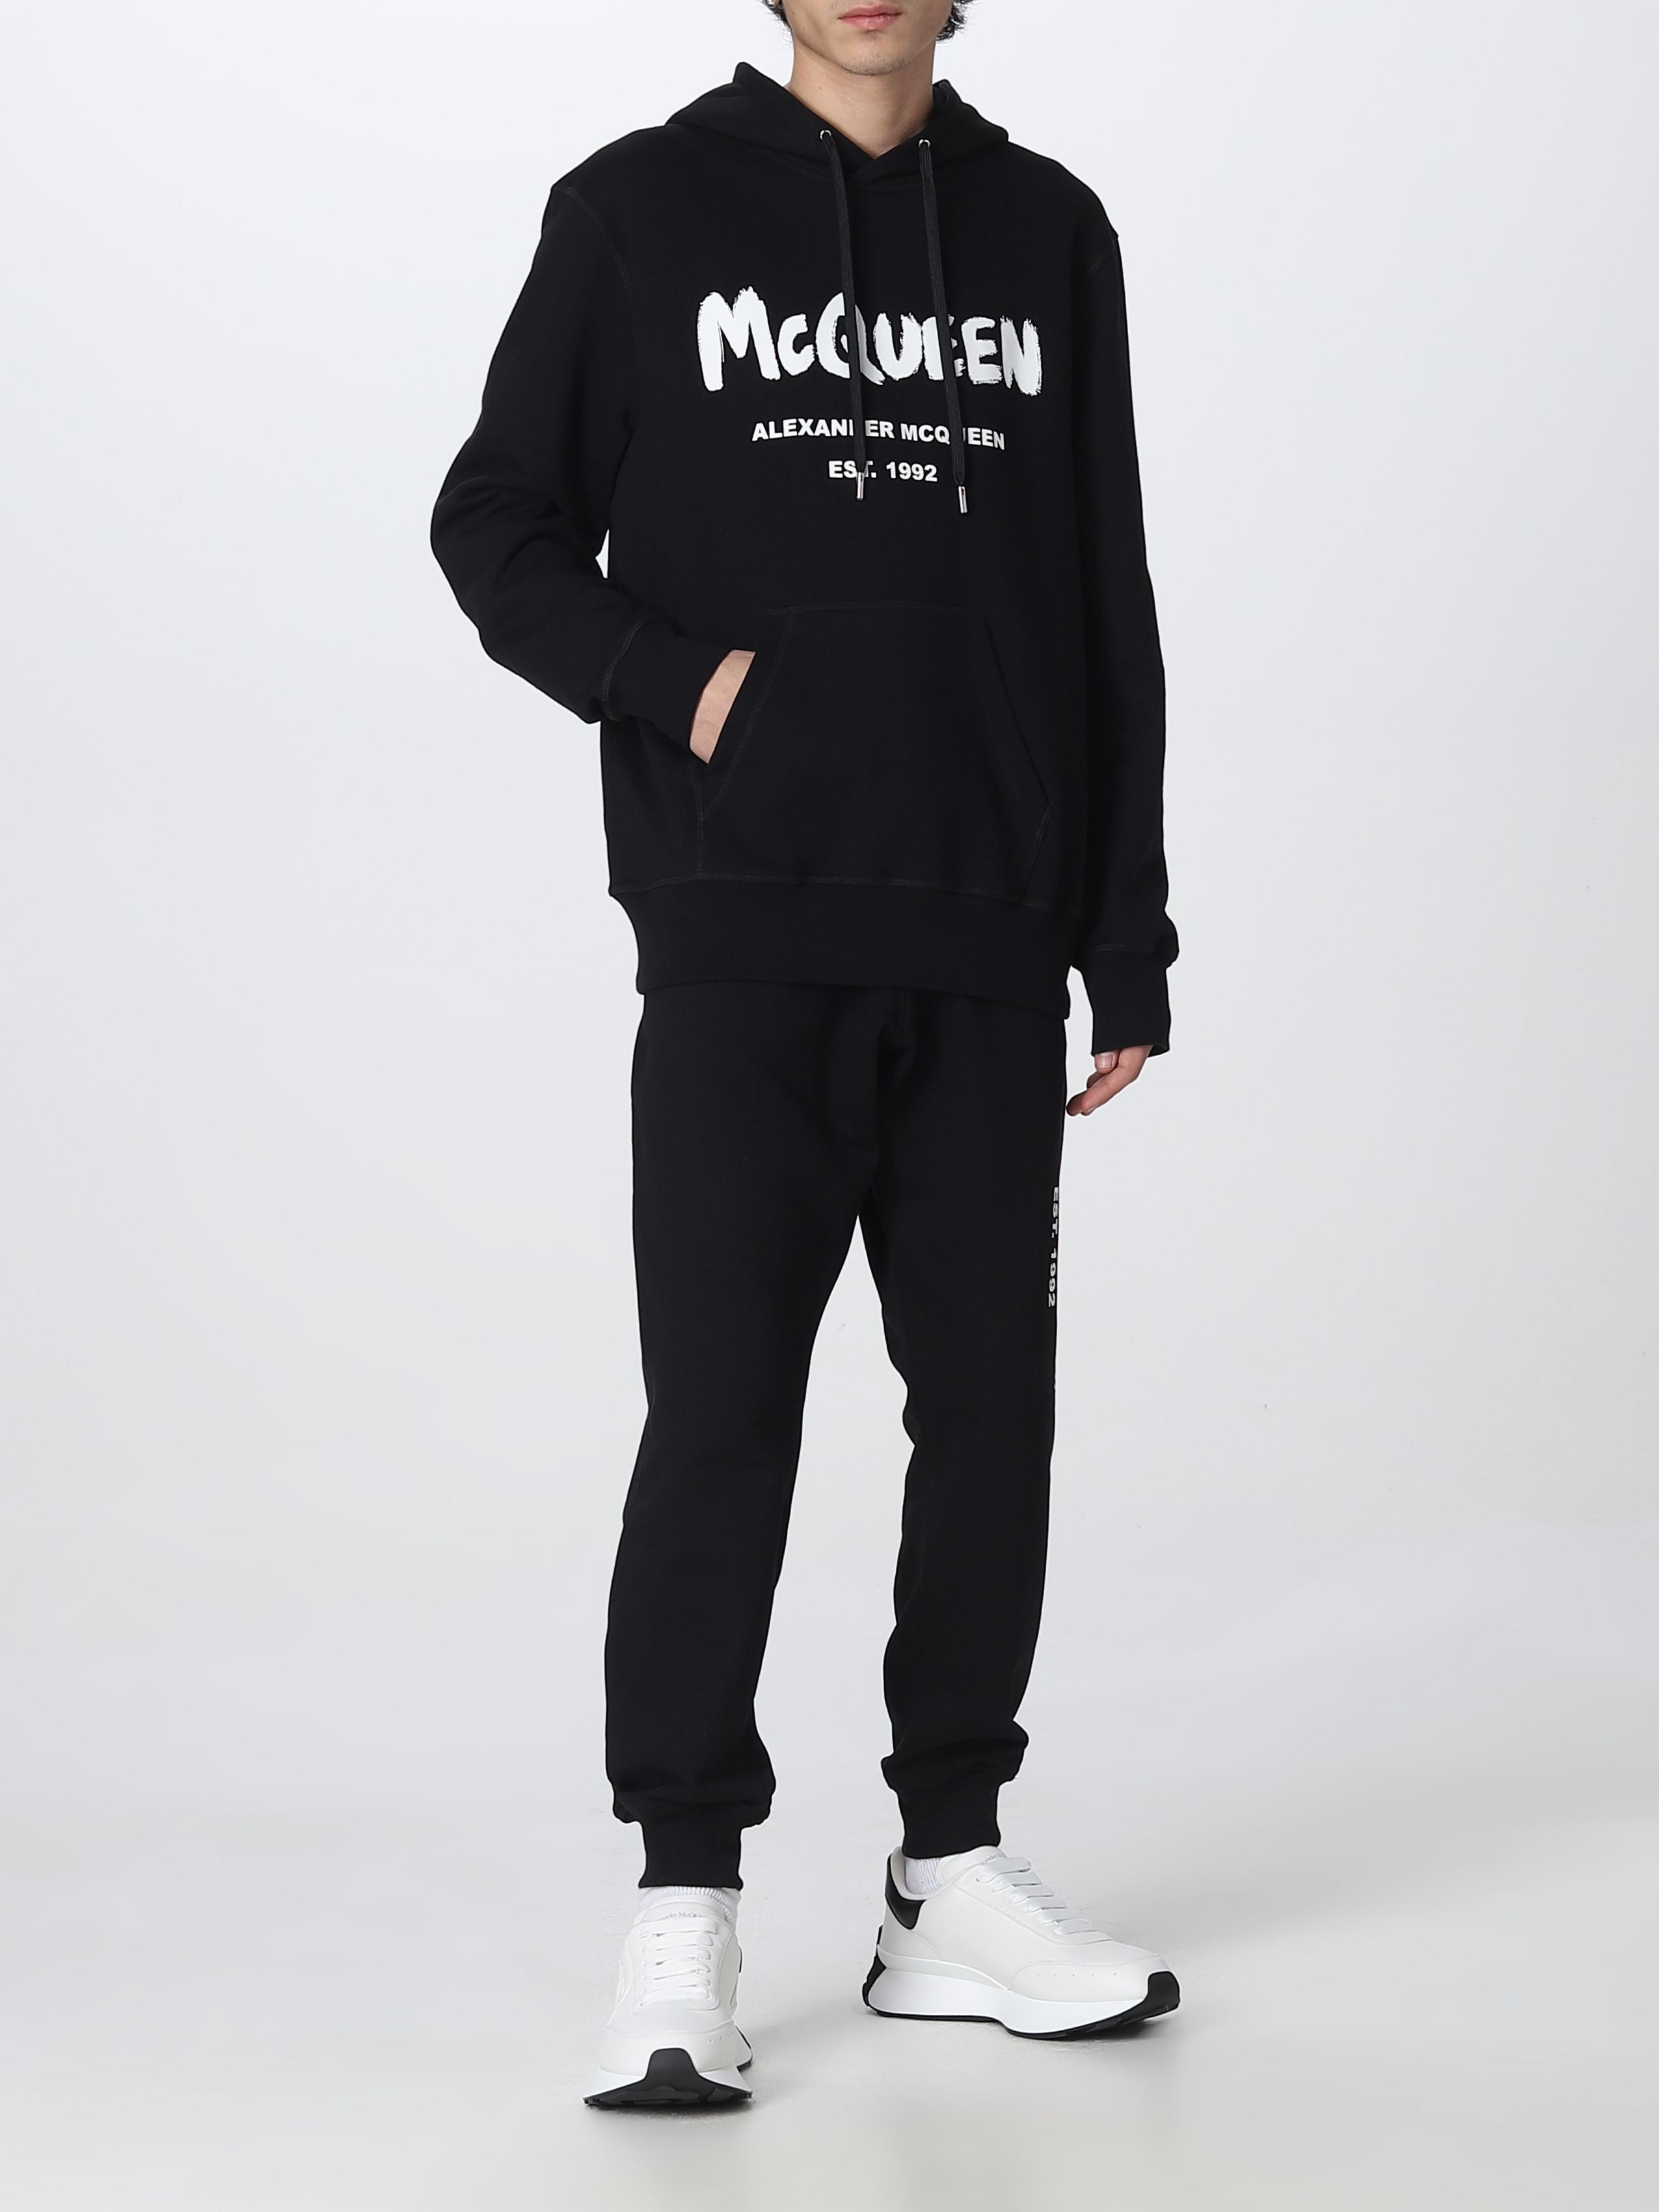 ALEXANDER MCQUEEN BLACK logo-print hooded sweatshirt - 6